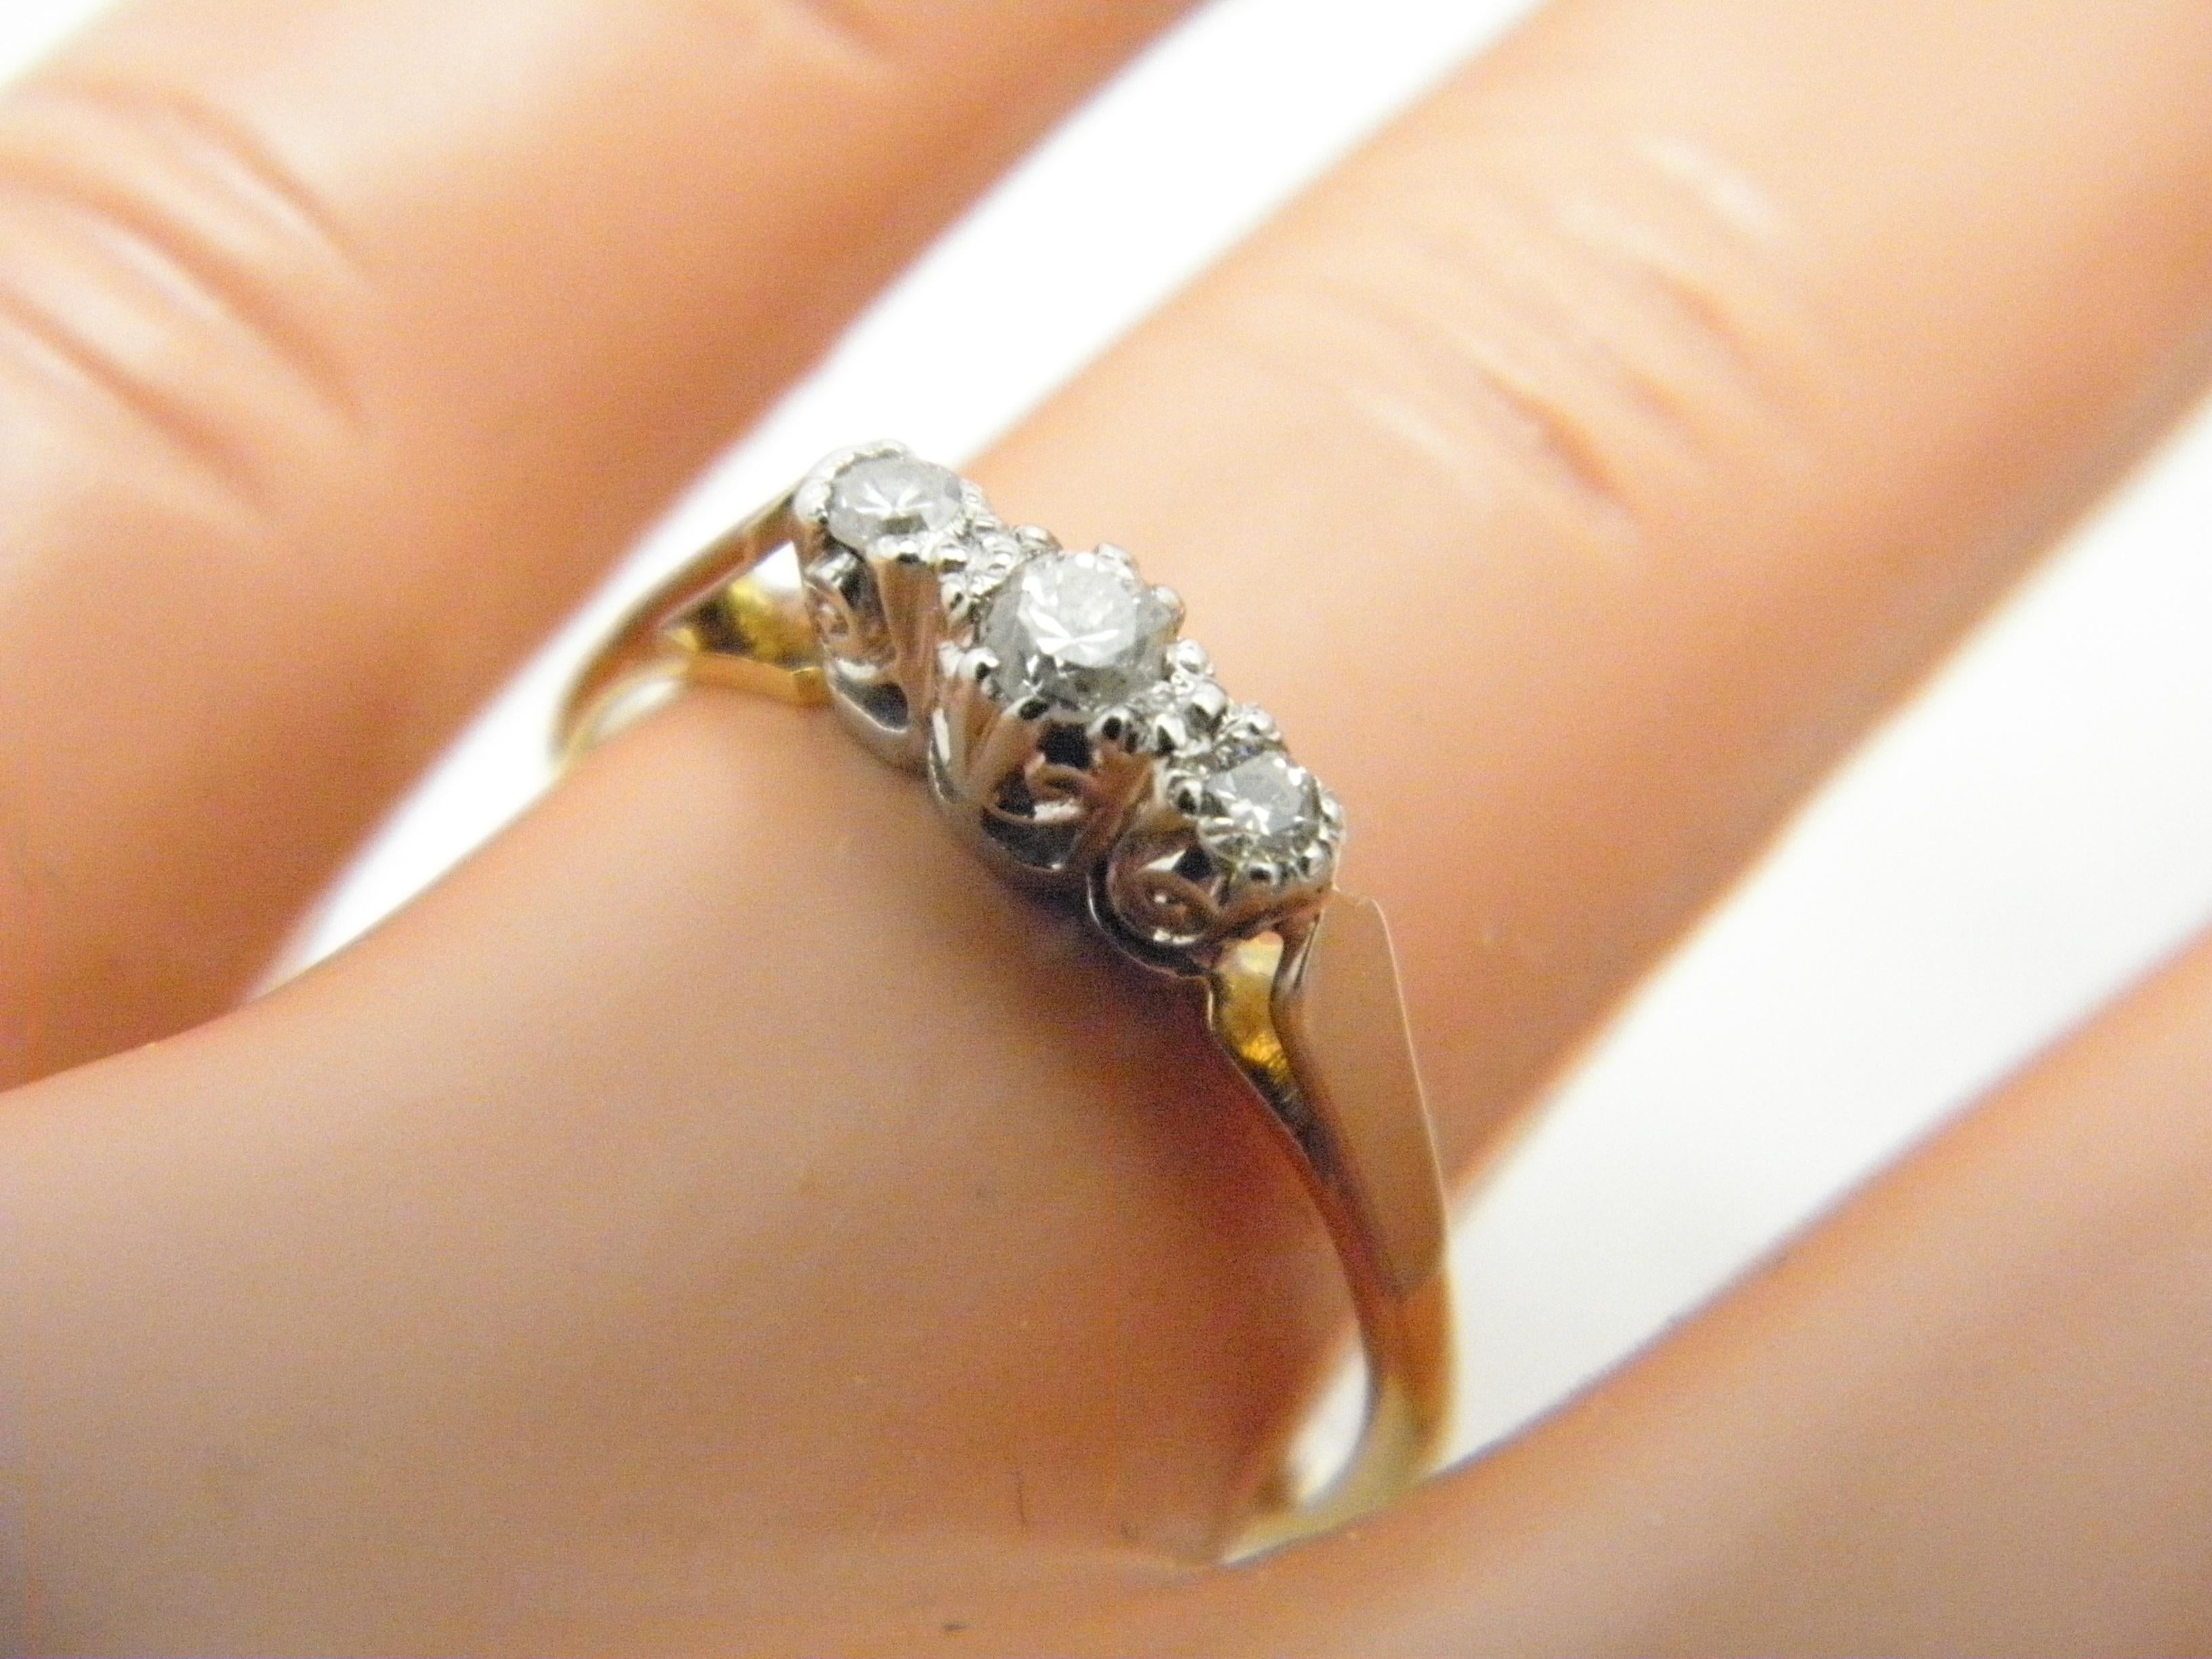 Antique 18ct Gold Platinum Diamond Trilogy Engagement Ring Size L 6 750 950 For Sale 1